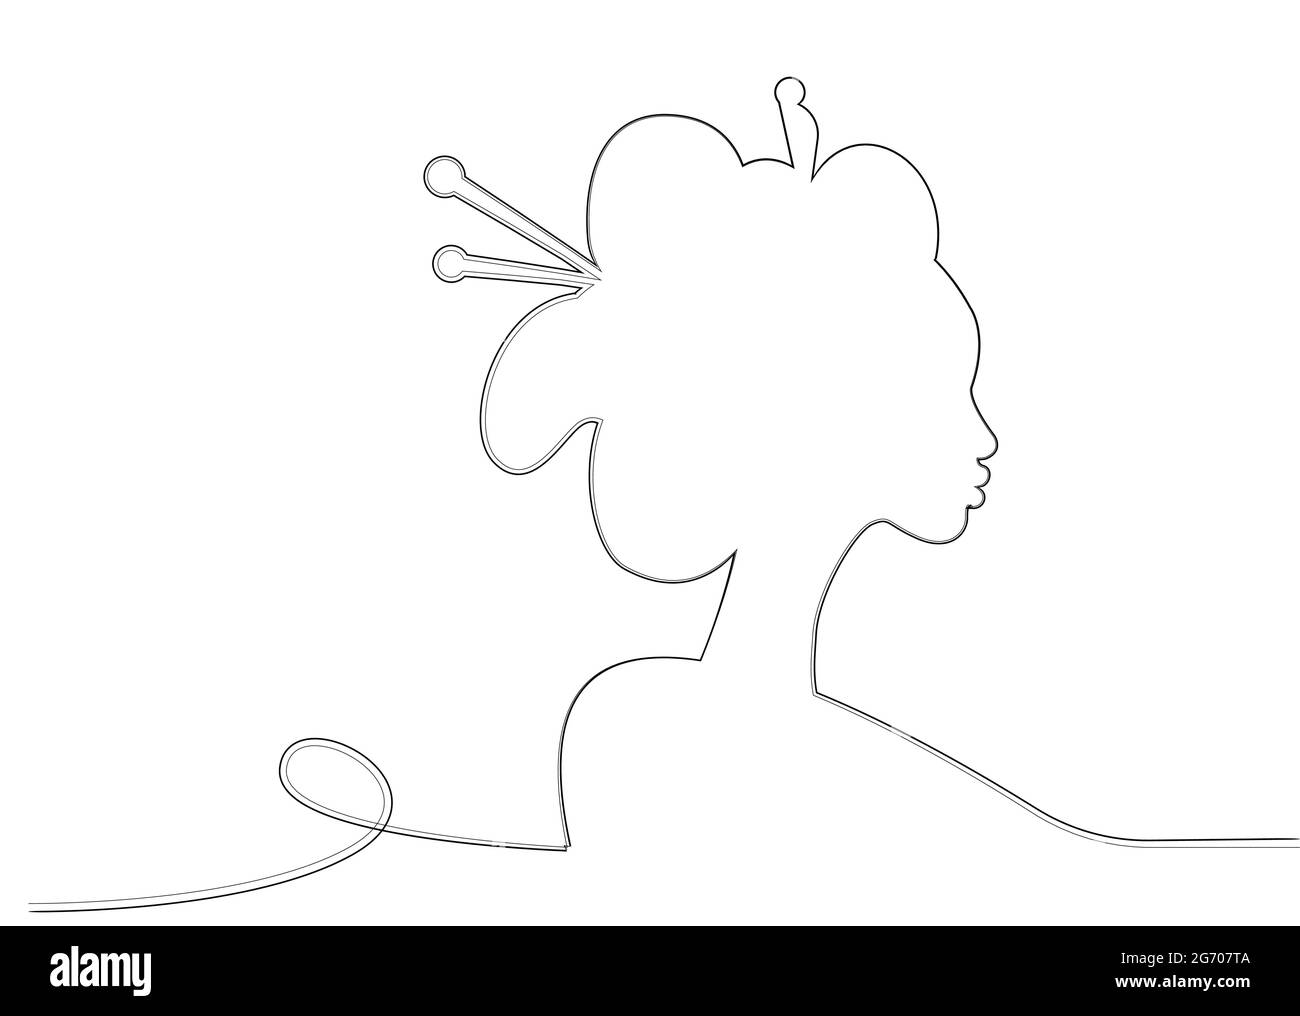 Silhouette di giovane ragazza giapponese un'antica acconciatura. Design in stile artistico Black Line. Geisha, maiko, principessa. Disegno di schizzo di una donna asiatica tradizionale. Illustrazione Vettoriale